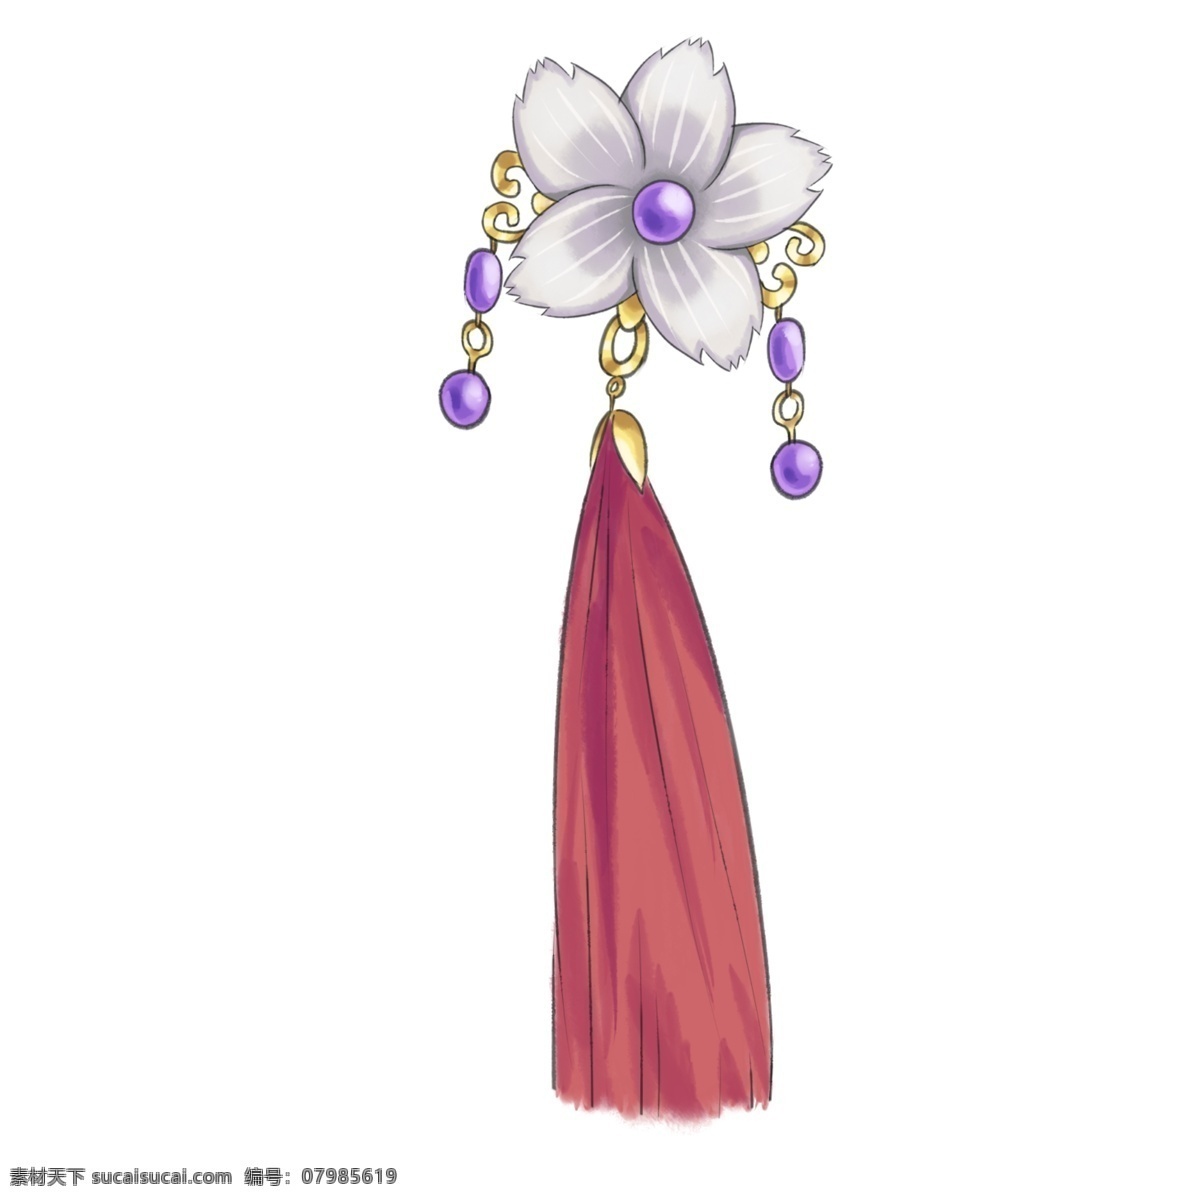 红色 发簪 吊饰 插画 红色的发簪 紫色的株百 红色的挂饰 白色的鲜花 中国风发簪 复古发簪 手绘发簪